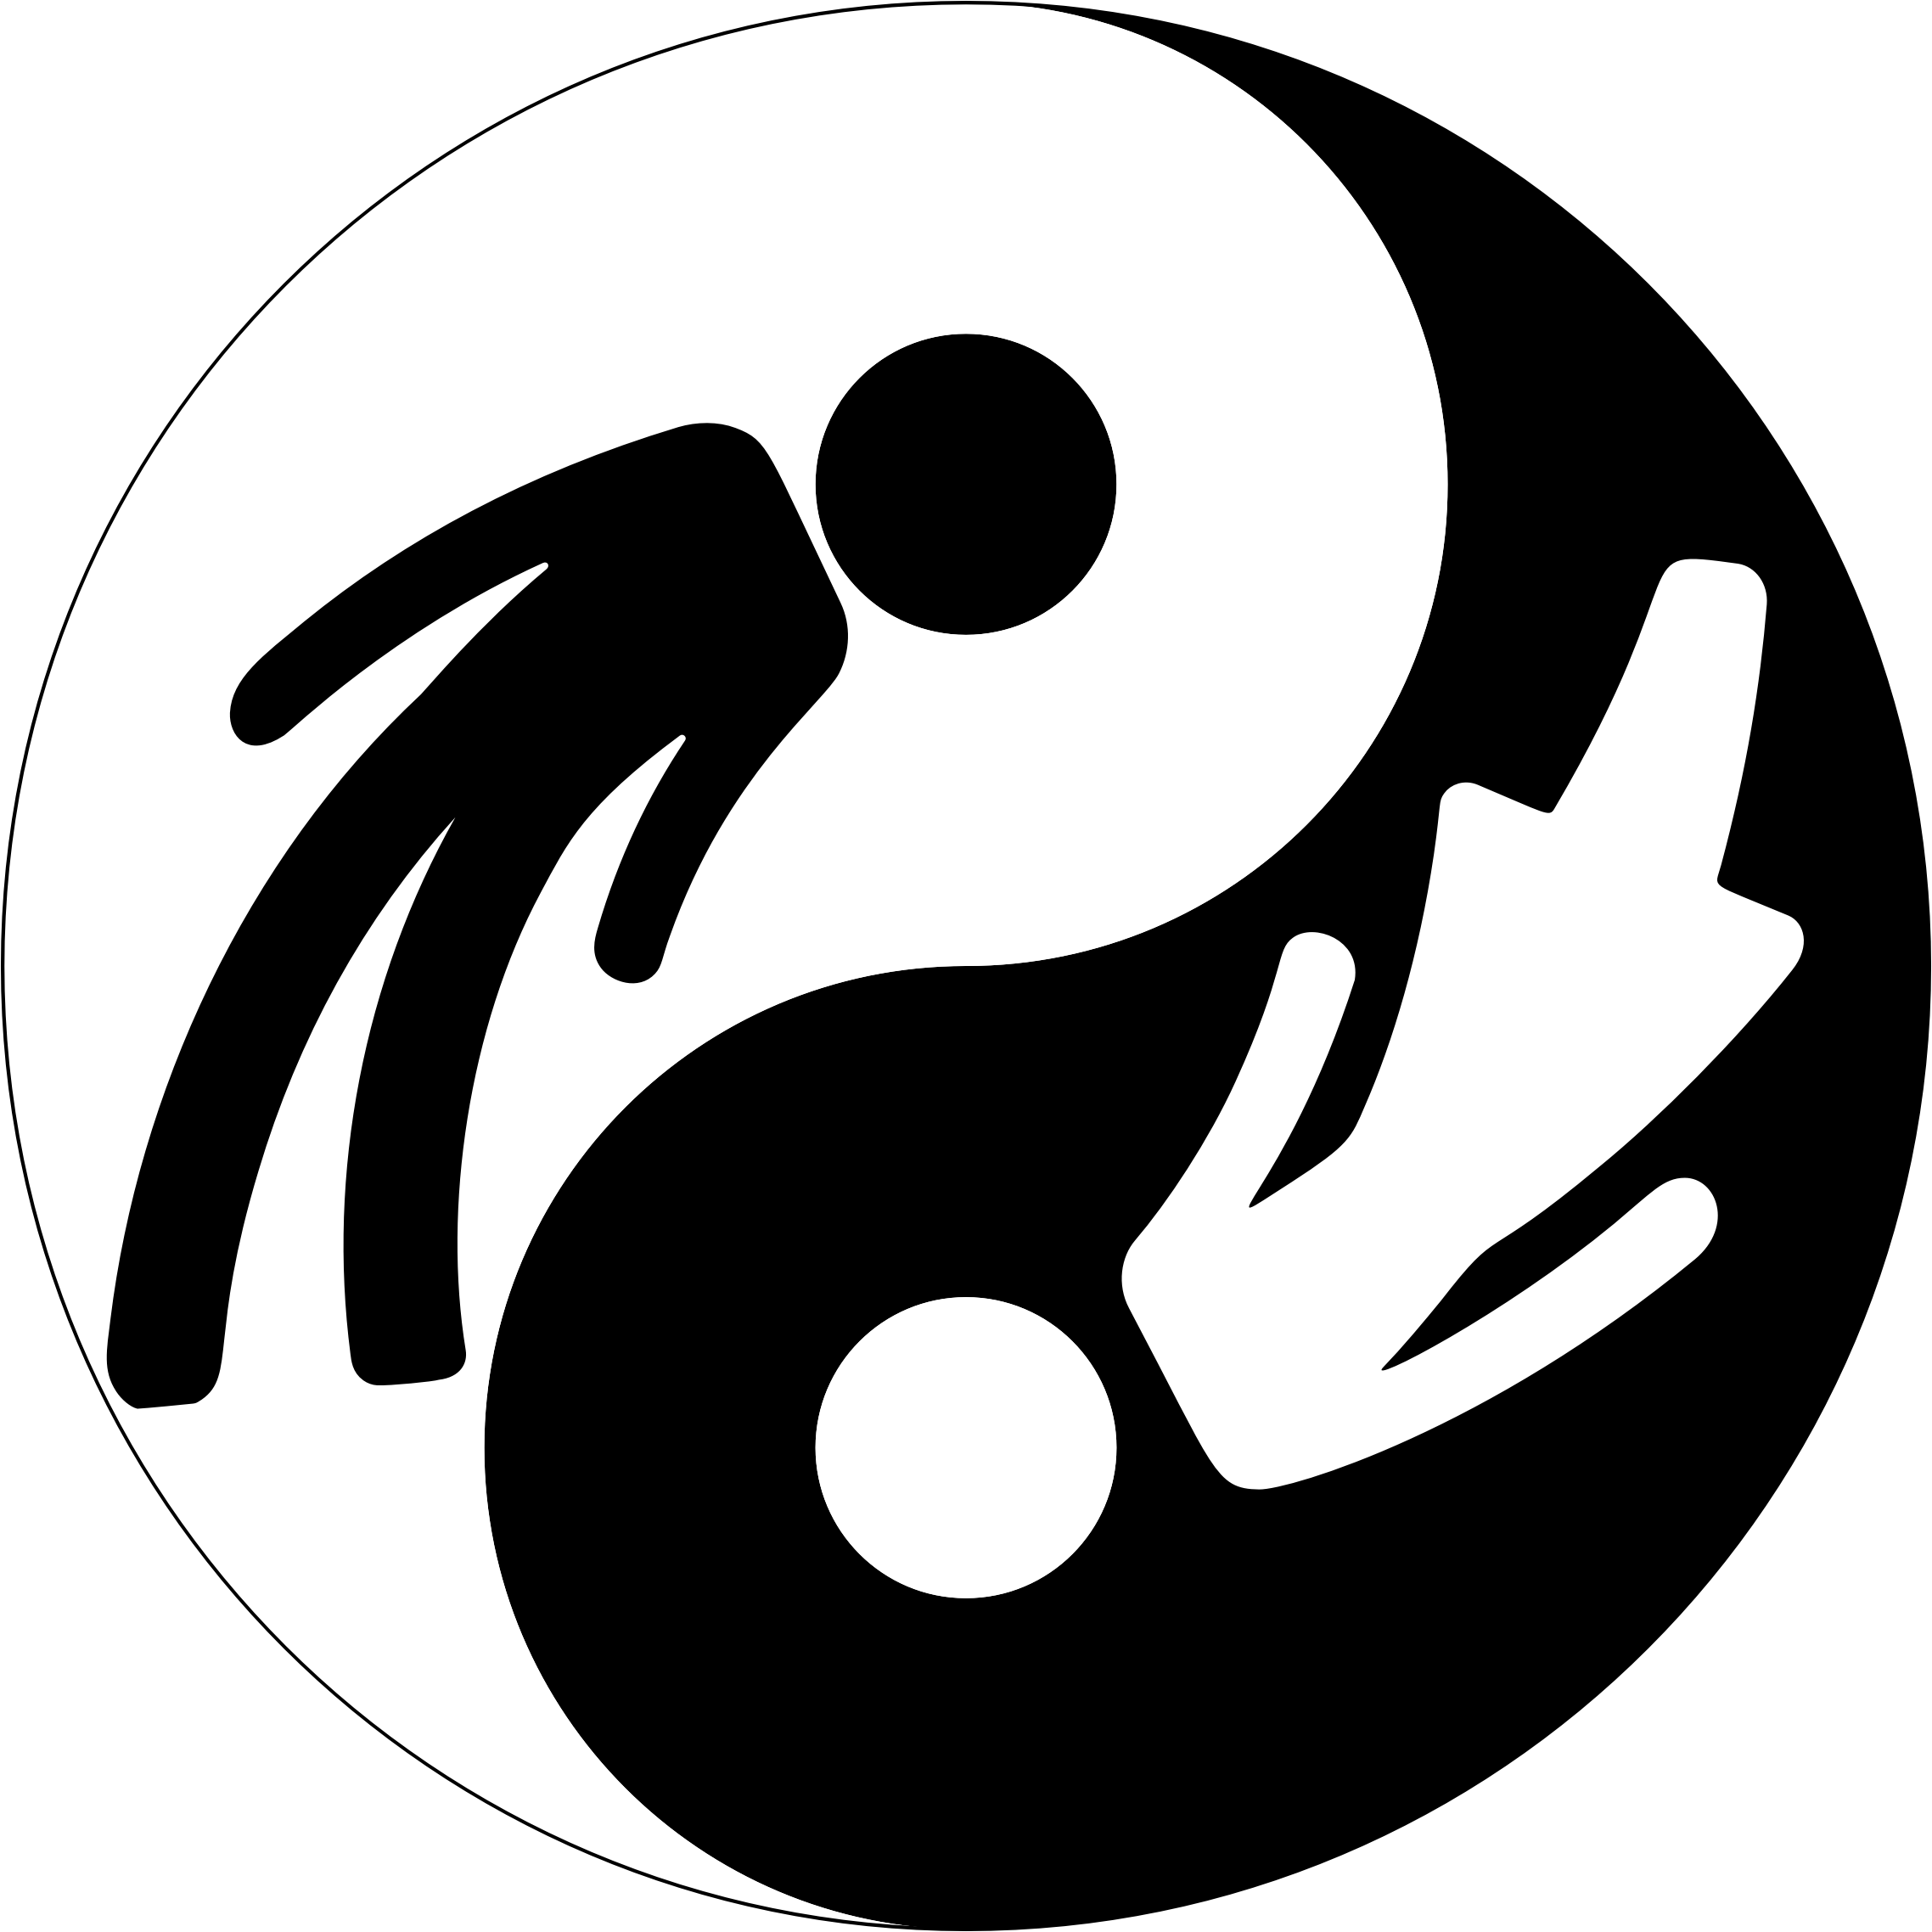 Big Image - Yin And Yang Symbol (2276x2276)